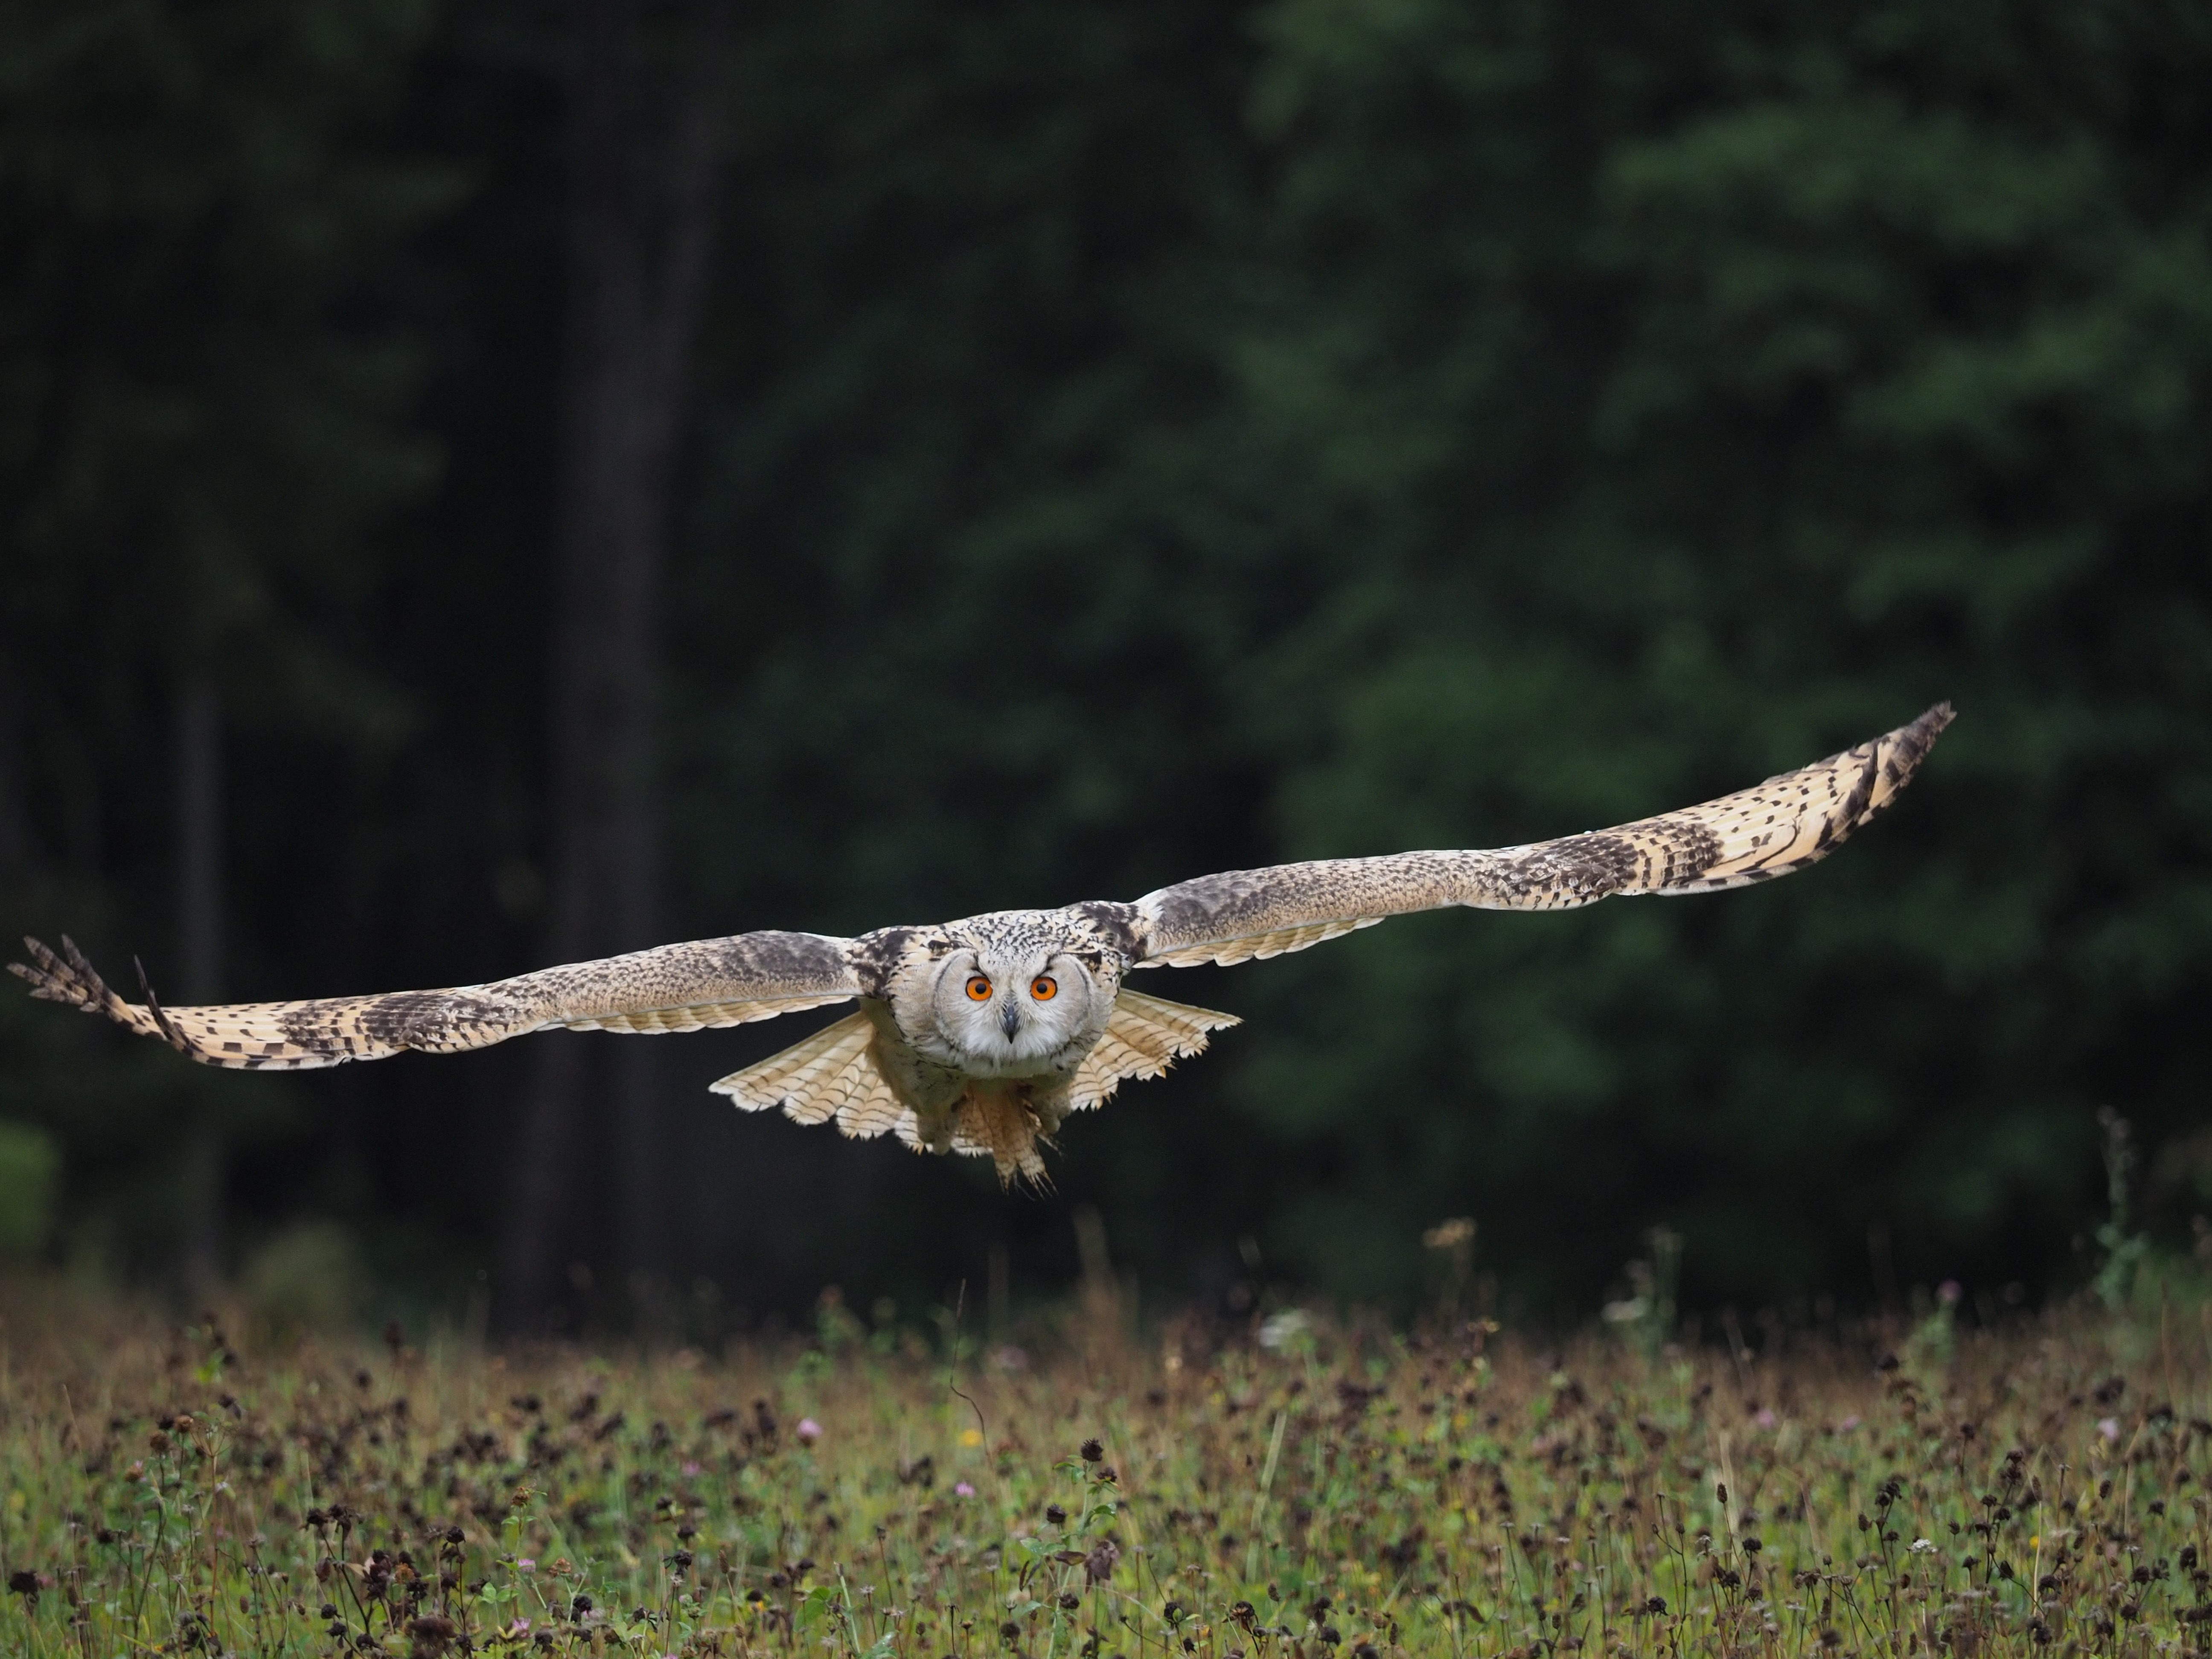 Owl in Flight by Petr Elvis